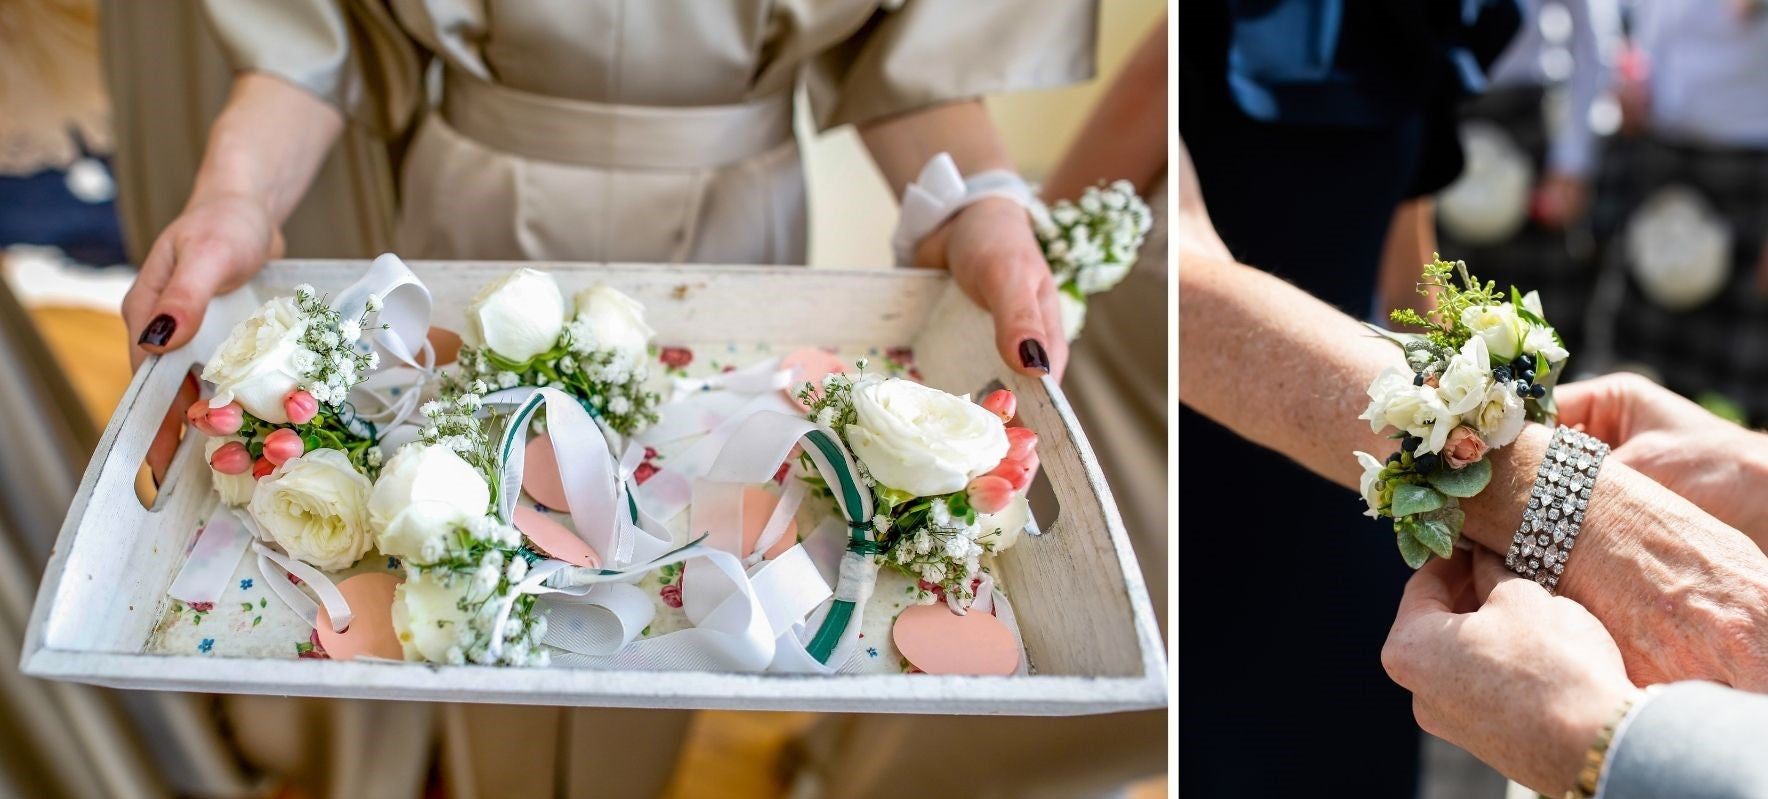 DIY Mariage : Comment faire un bracelet de fleurs ? [Vidéo]